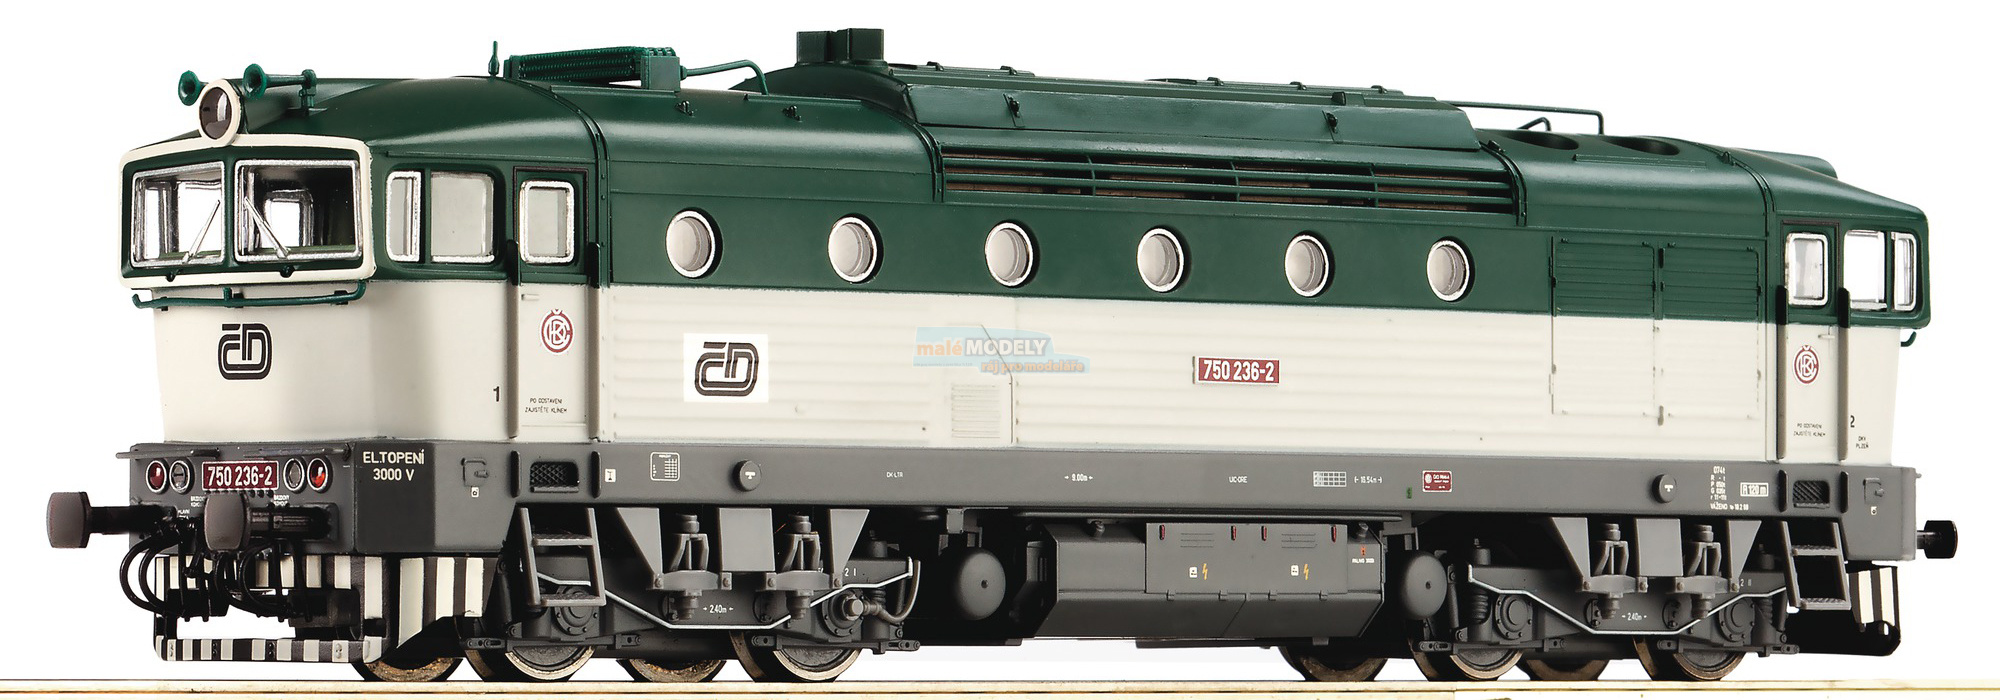 Dieslová lokomotiva 750 - Brejlovec